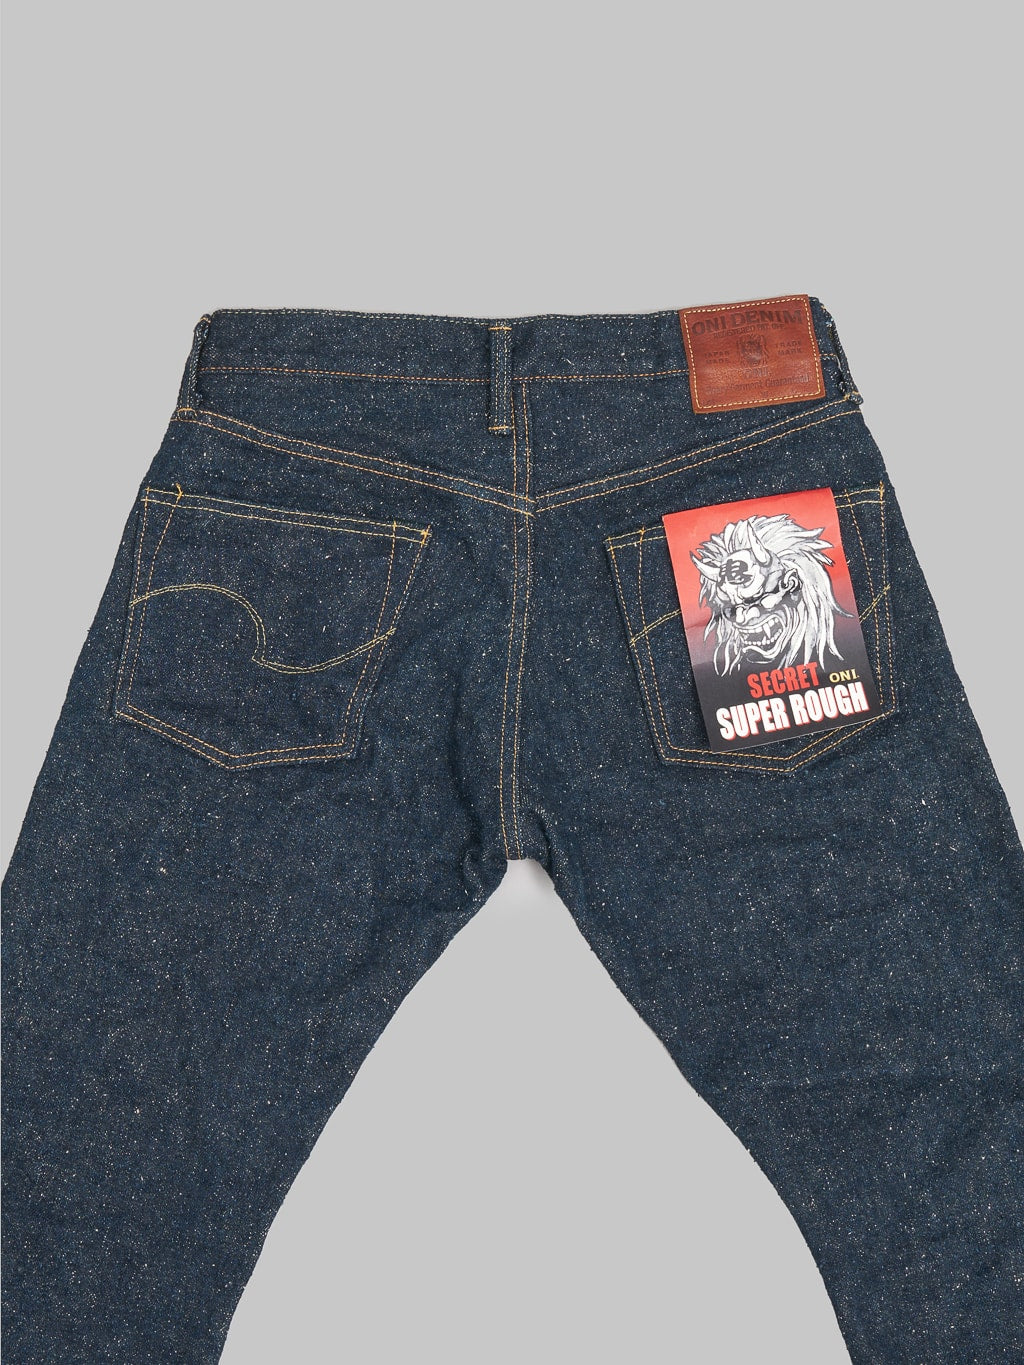 ONI 622 Secret Super Rough 20oz Jeans back pockets